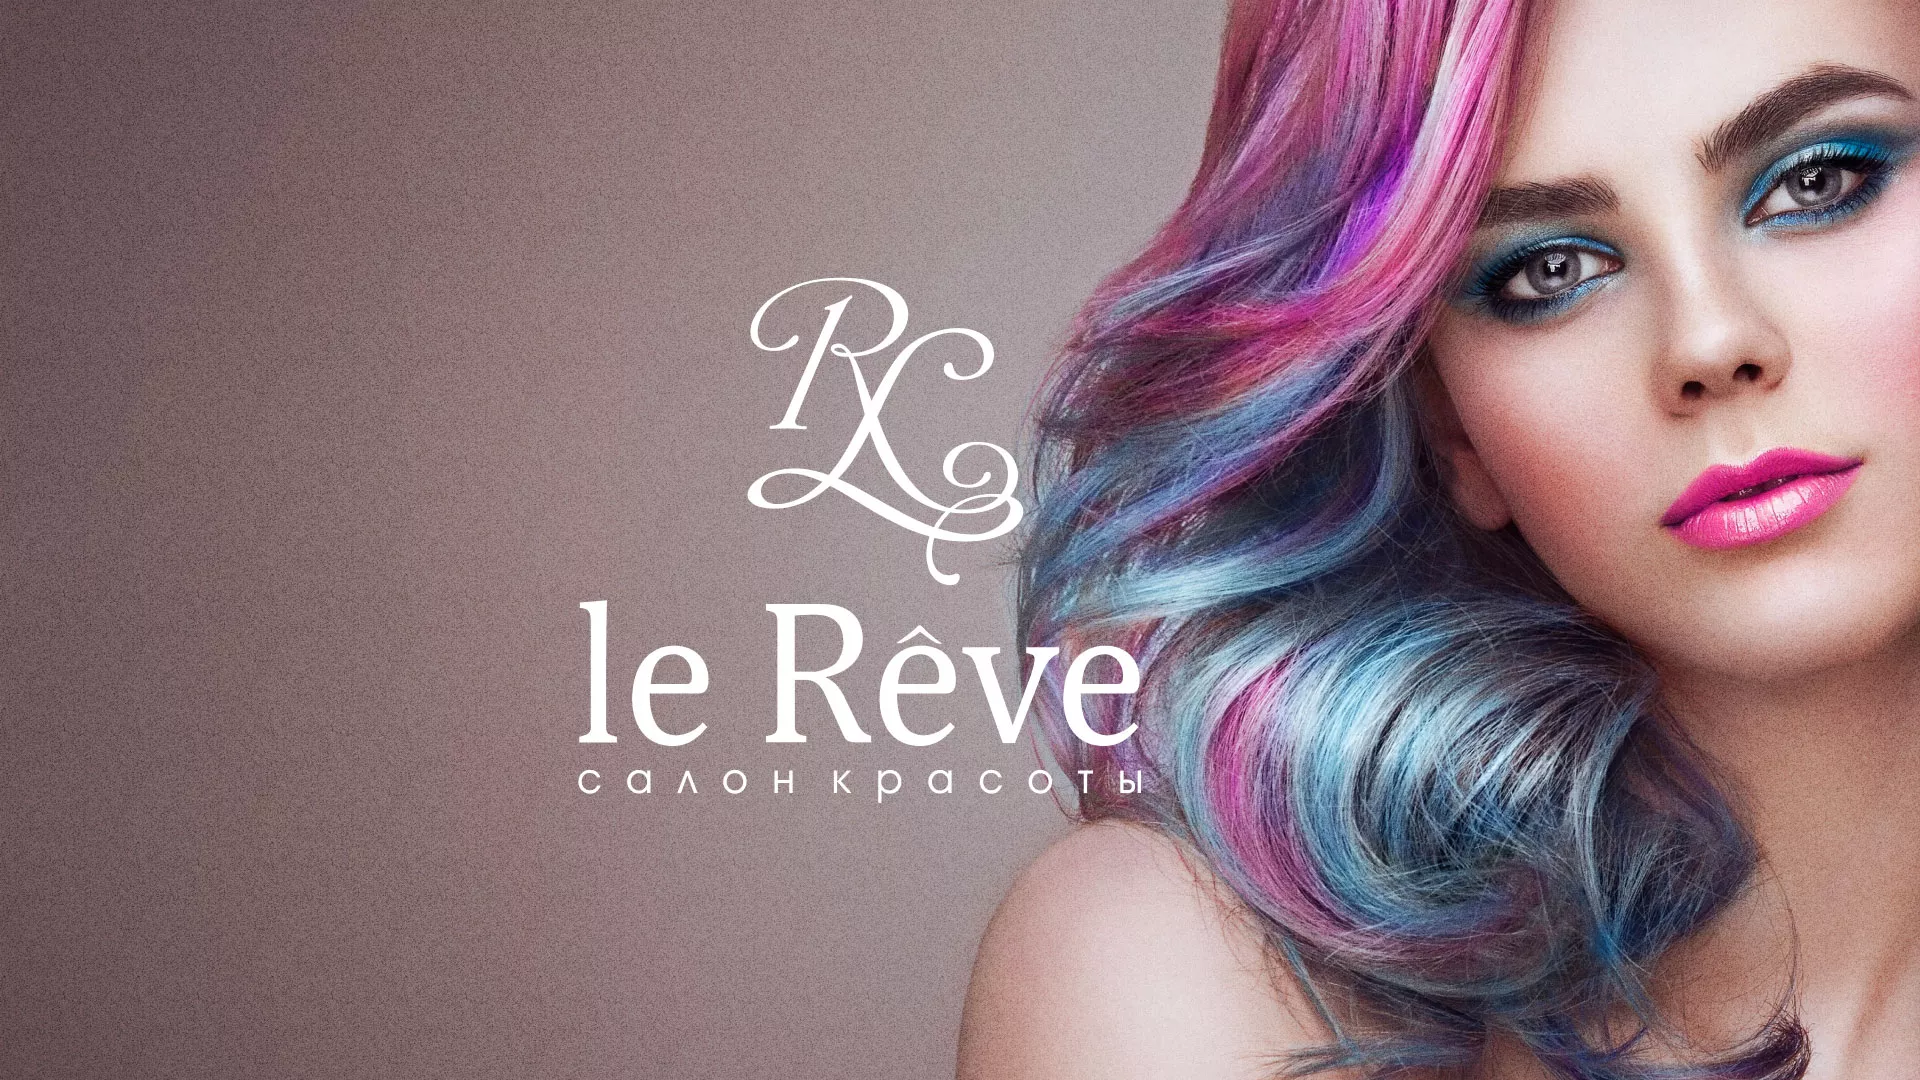 Создание сайта для салона красоты «Le Reve» в Мирном